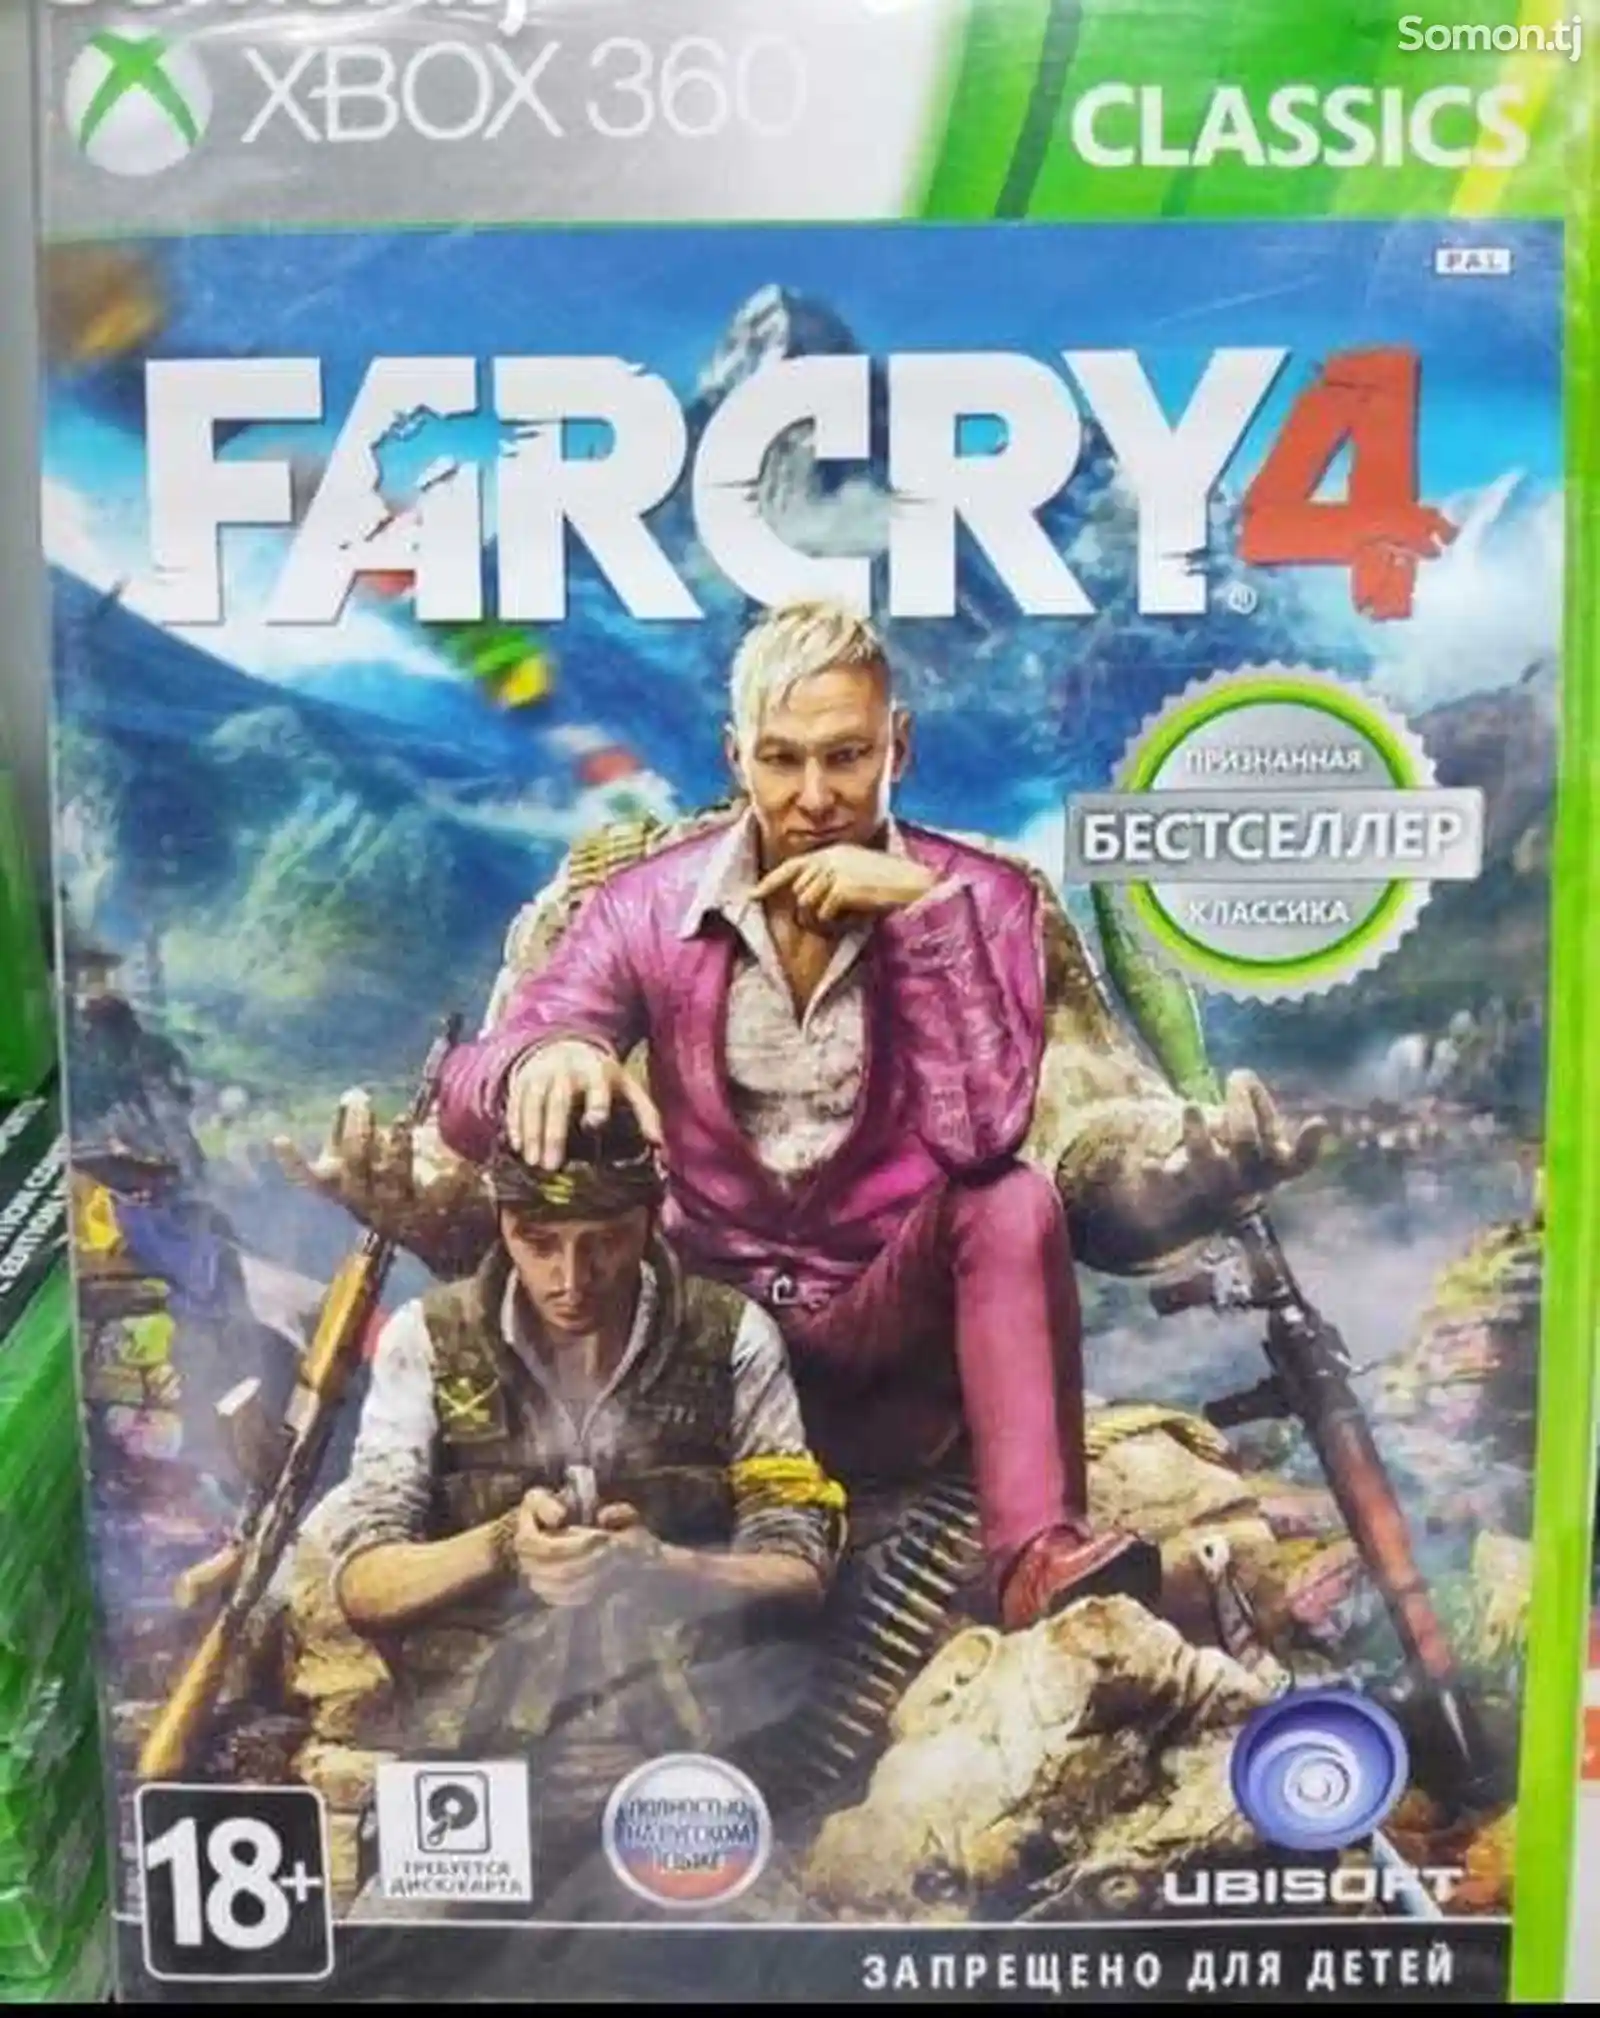 Игра Farcry 4 русская версия для XBOX 360-1